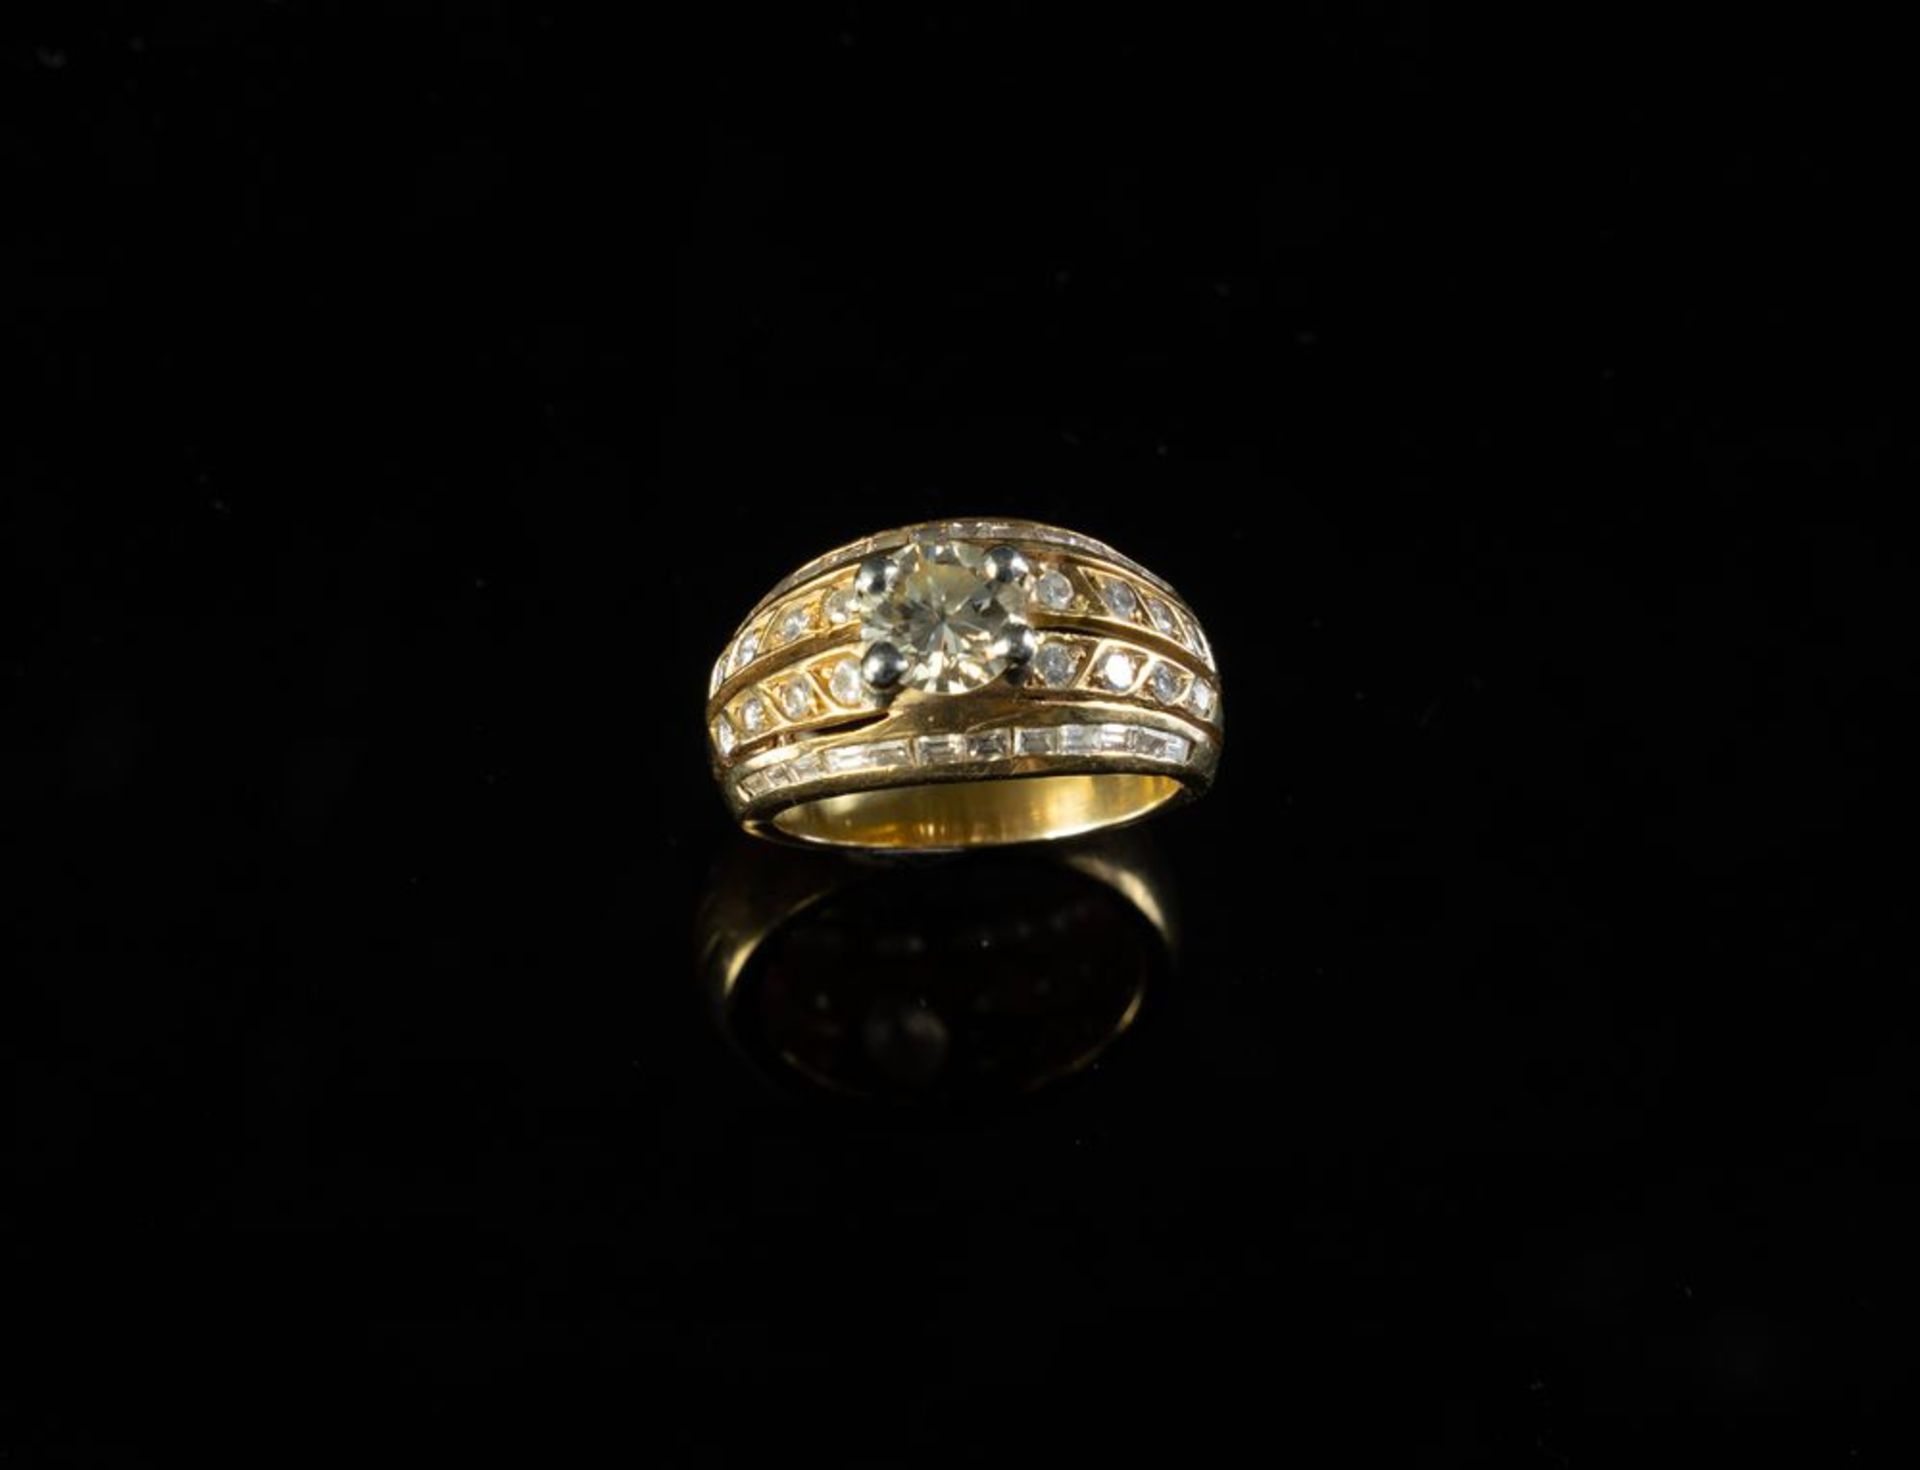 ANELLO IN ORO GIALLO CON DIAMANTI Anello in oro giallo 18k con diamante centrale taglio brillante ro - Image 2 of 5